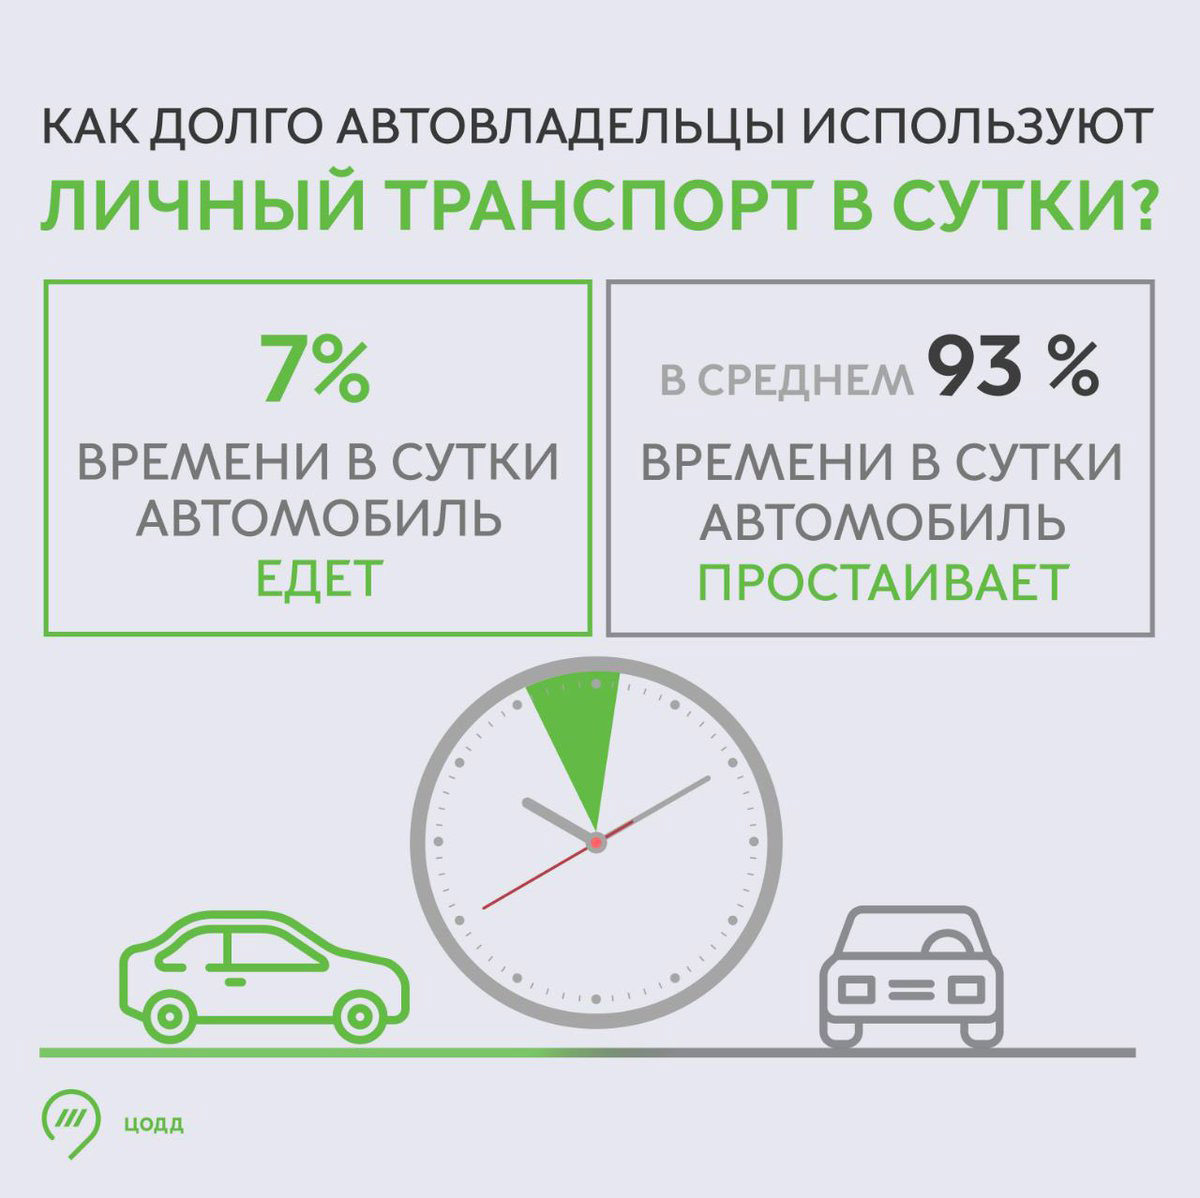 Наглядная брошюра о количестве времени, которое люди проводят в своем авто.